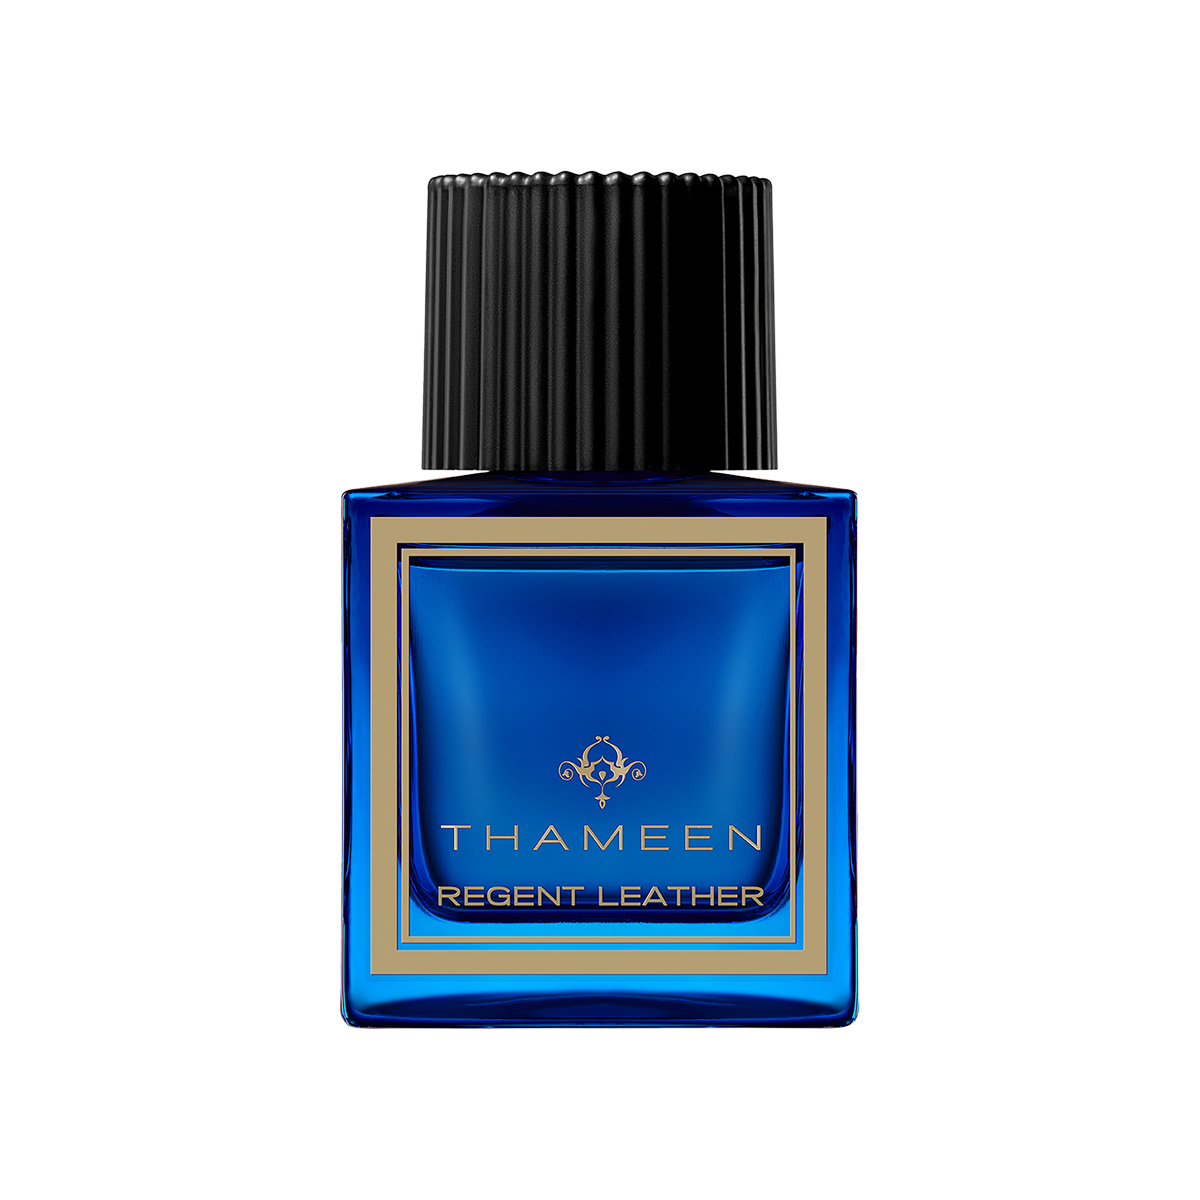 Thameen London - Regent Leather Extrait de Parfum